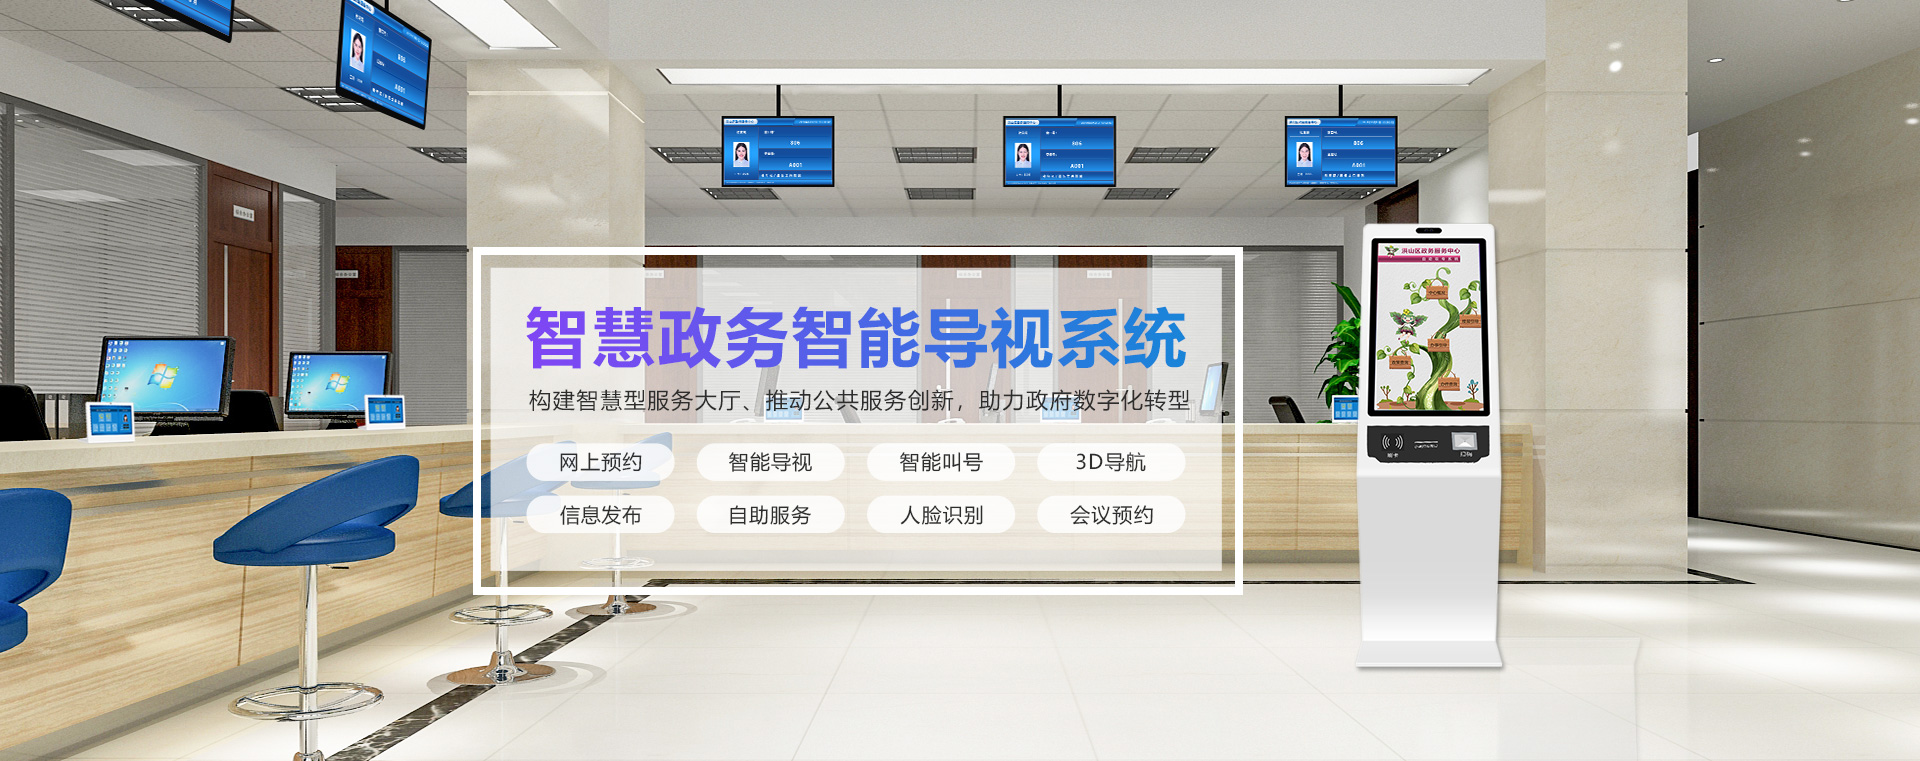 武汉星际互动智能技术有限公司